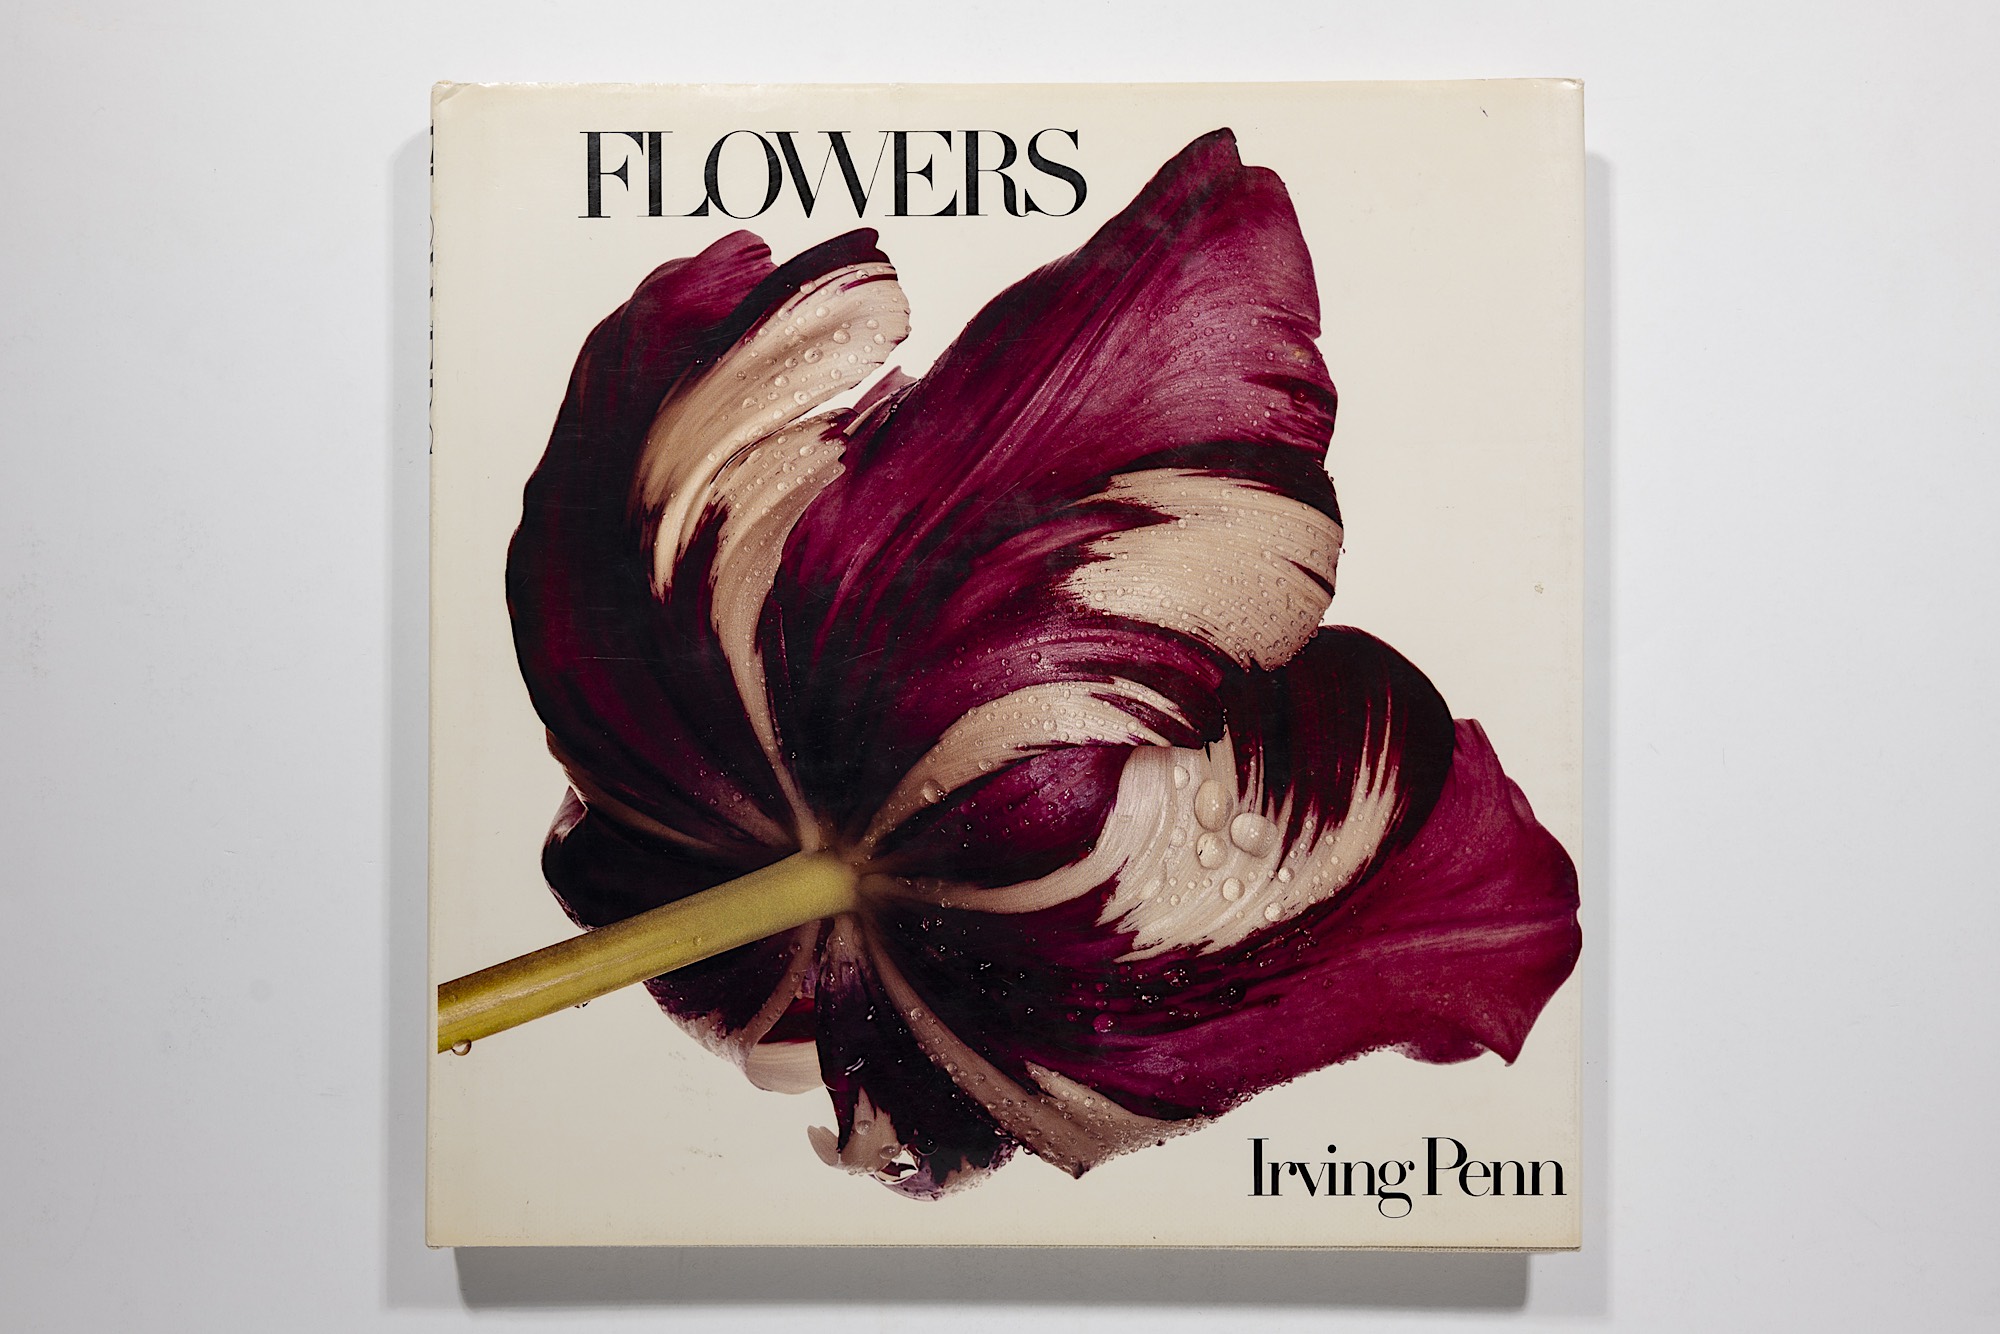 Irving Penn - Flowers Image 1